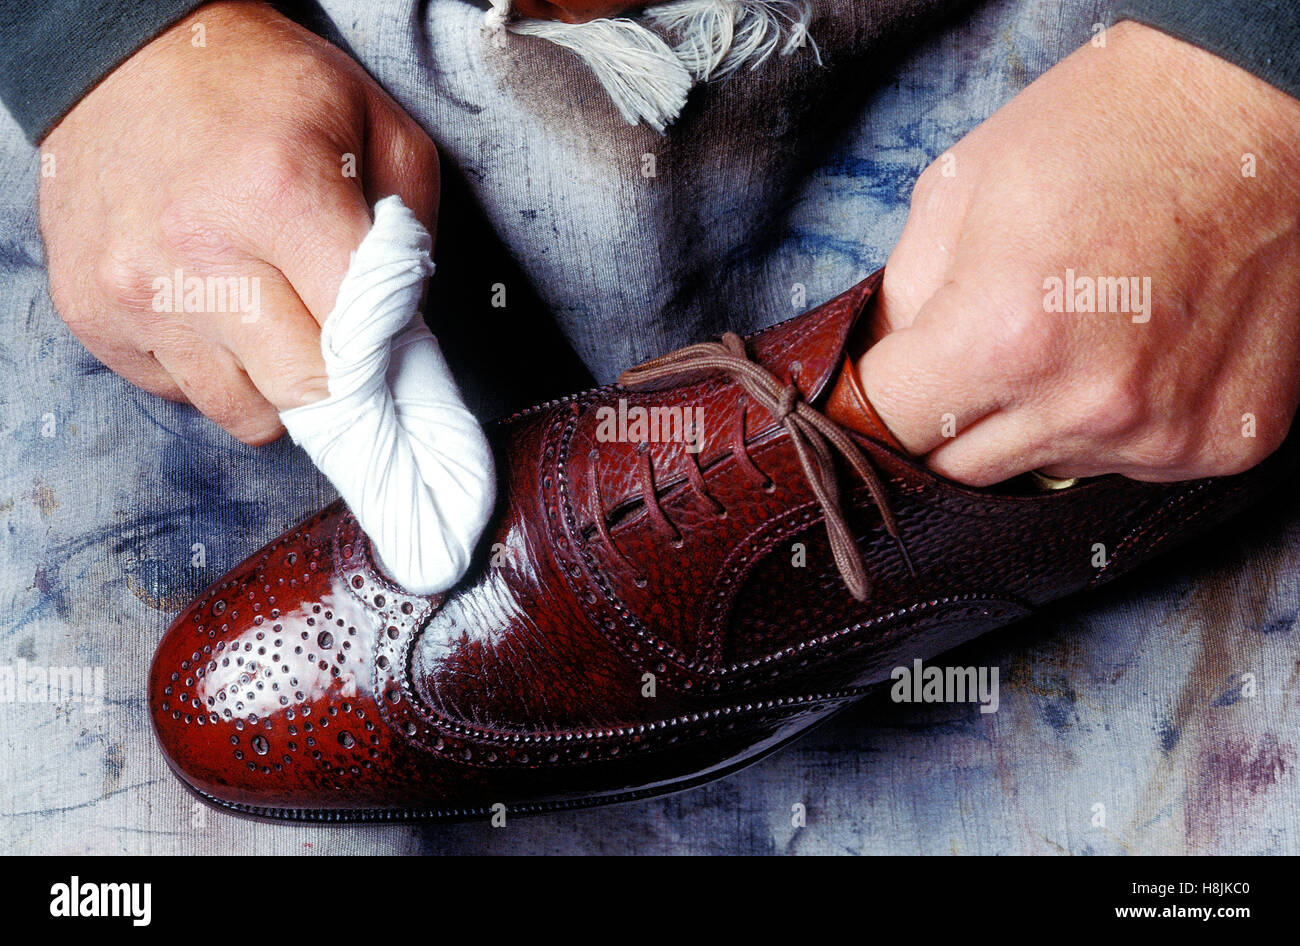 Spiegel polieren Schuhe von einem Schuhputzer Mann, Paris, Frankreich  Stockfotografie - Alamy